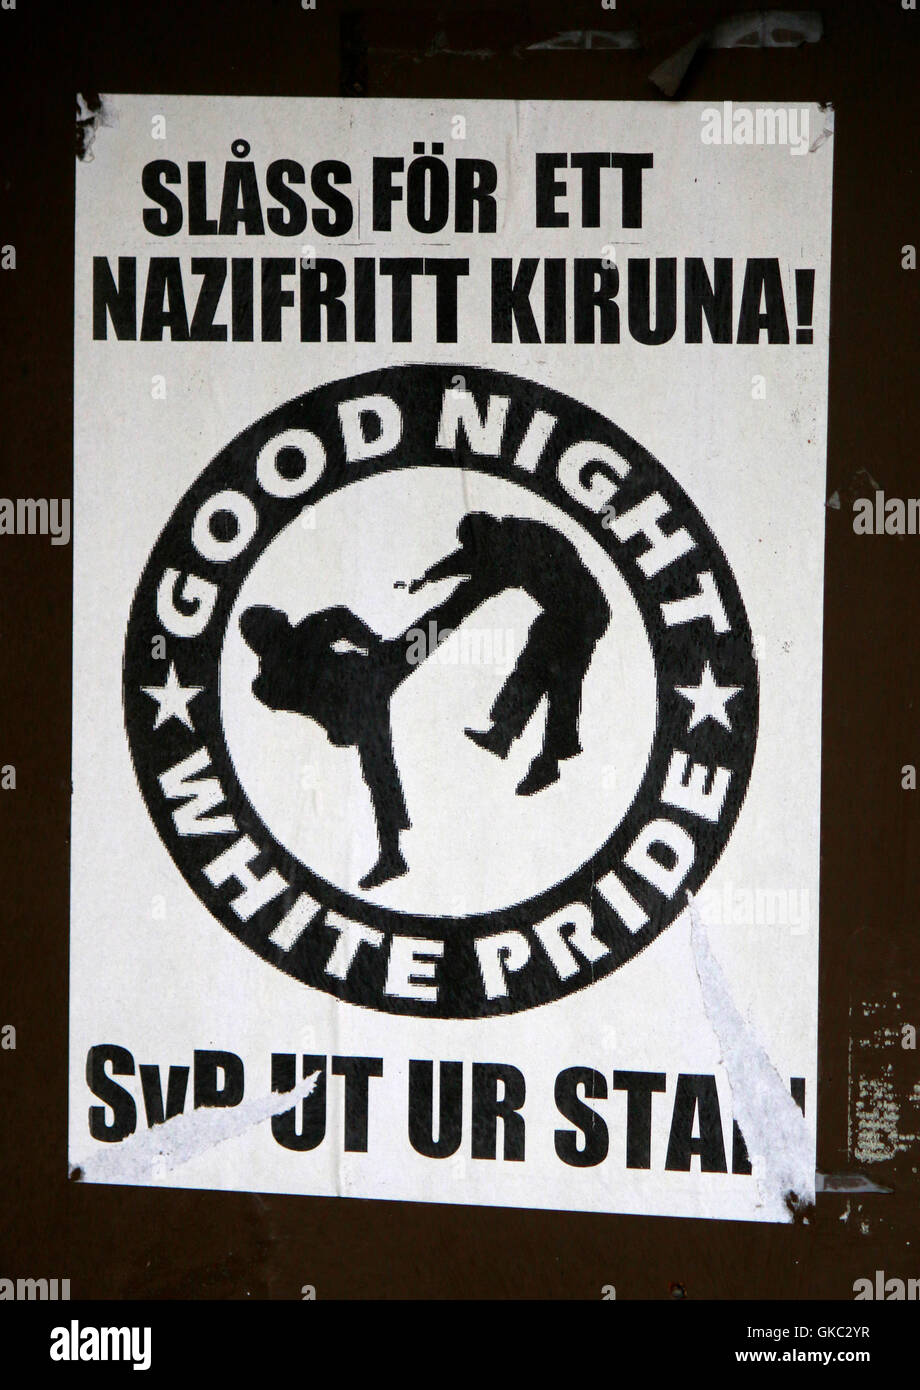 Impressionen: "gute Nacht White Pride" - Anti-Neonazi-Aufkleber - Kiruna, Lappland, Schweden. Stockfoto